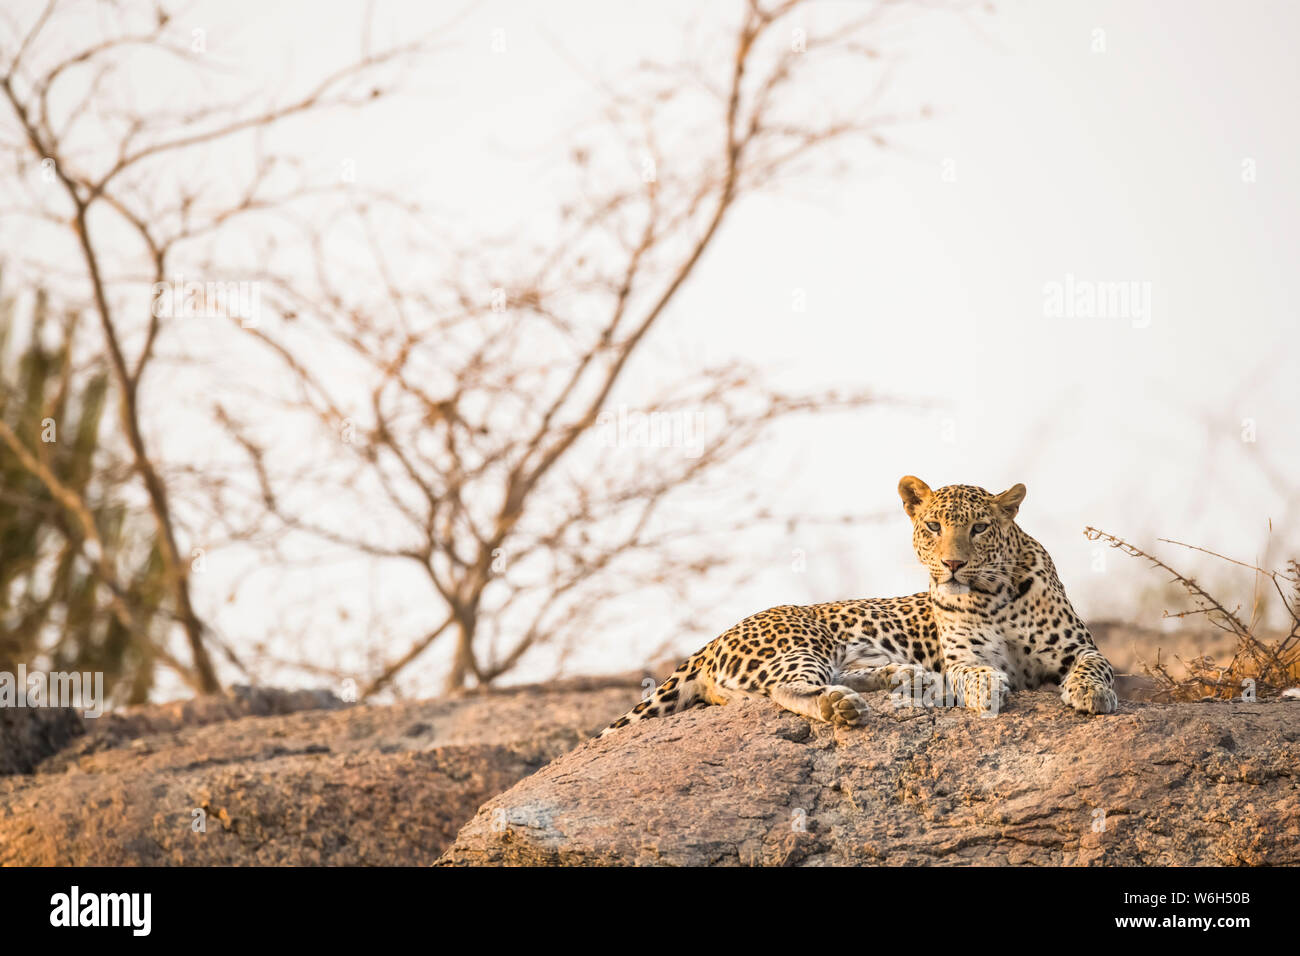 Léopard (Panthera pardus) reposant sur une roche dans la lumière du coucher du soleil dans le nord de l'Inde; Rajasthan, Inde Banque D'Images